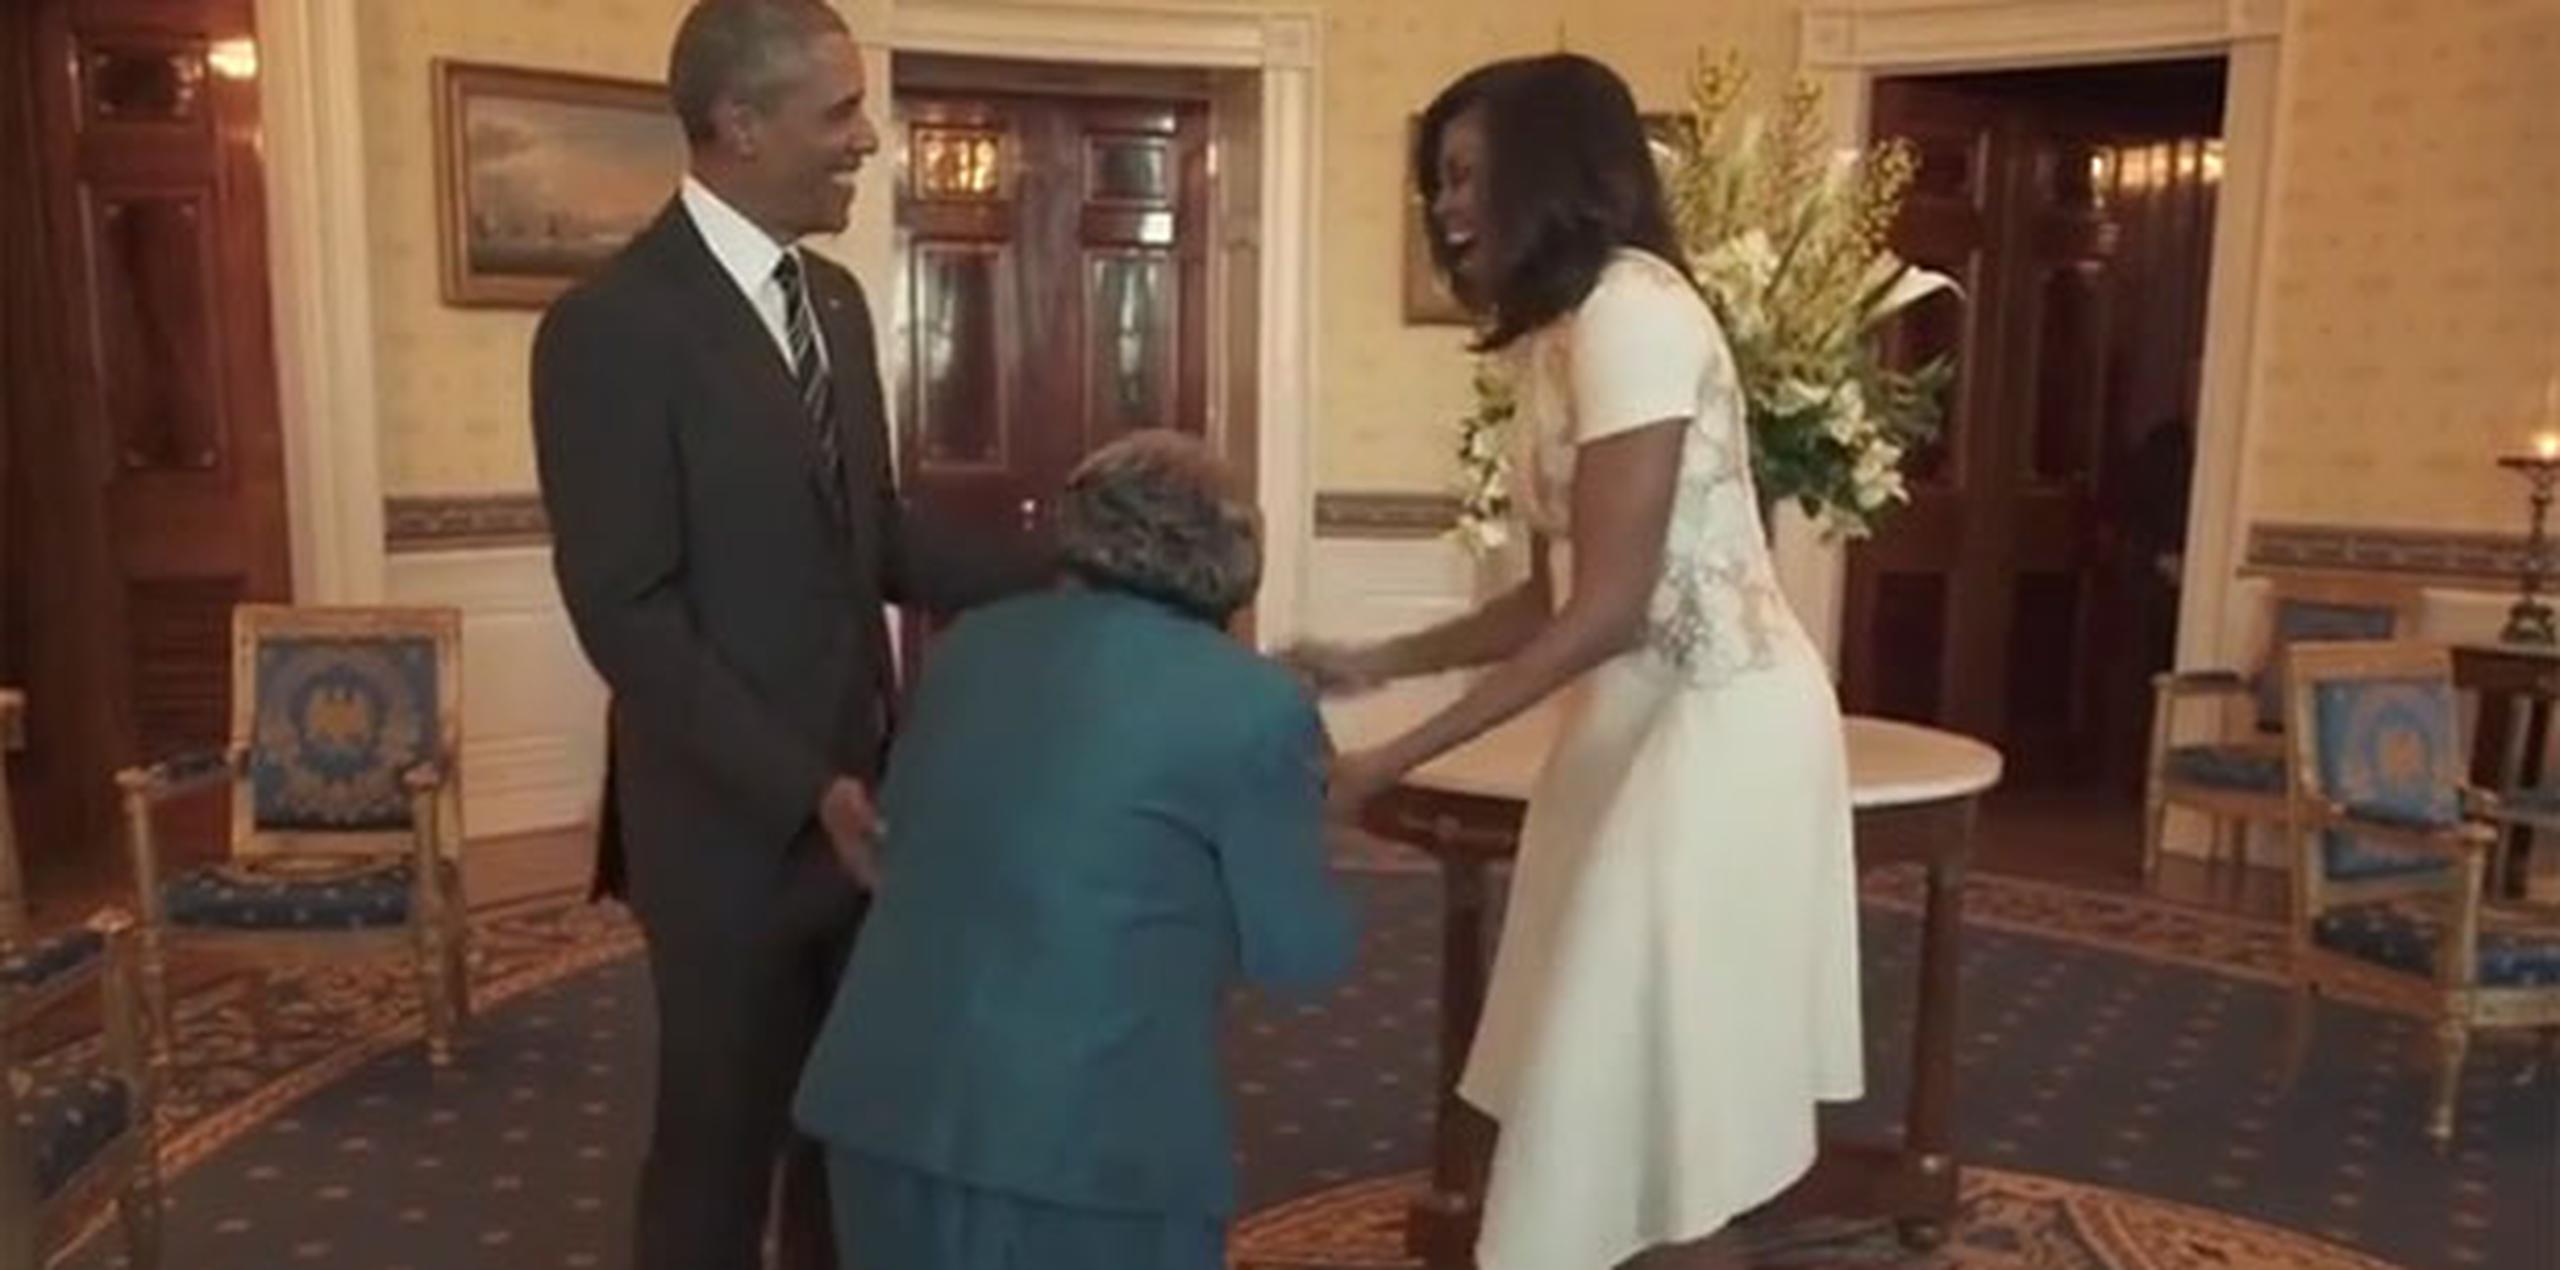 Mientras los tres posaban para las cámaras, la anciana se declaró "feliz" de poder conocer a Obama, el décimo octavo presidente que ha visto entrar en la Casa Blanca a lo largo de su vida. (Youtube)